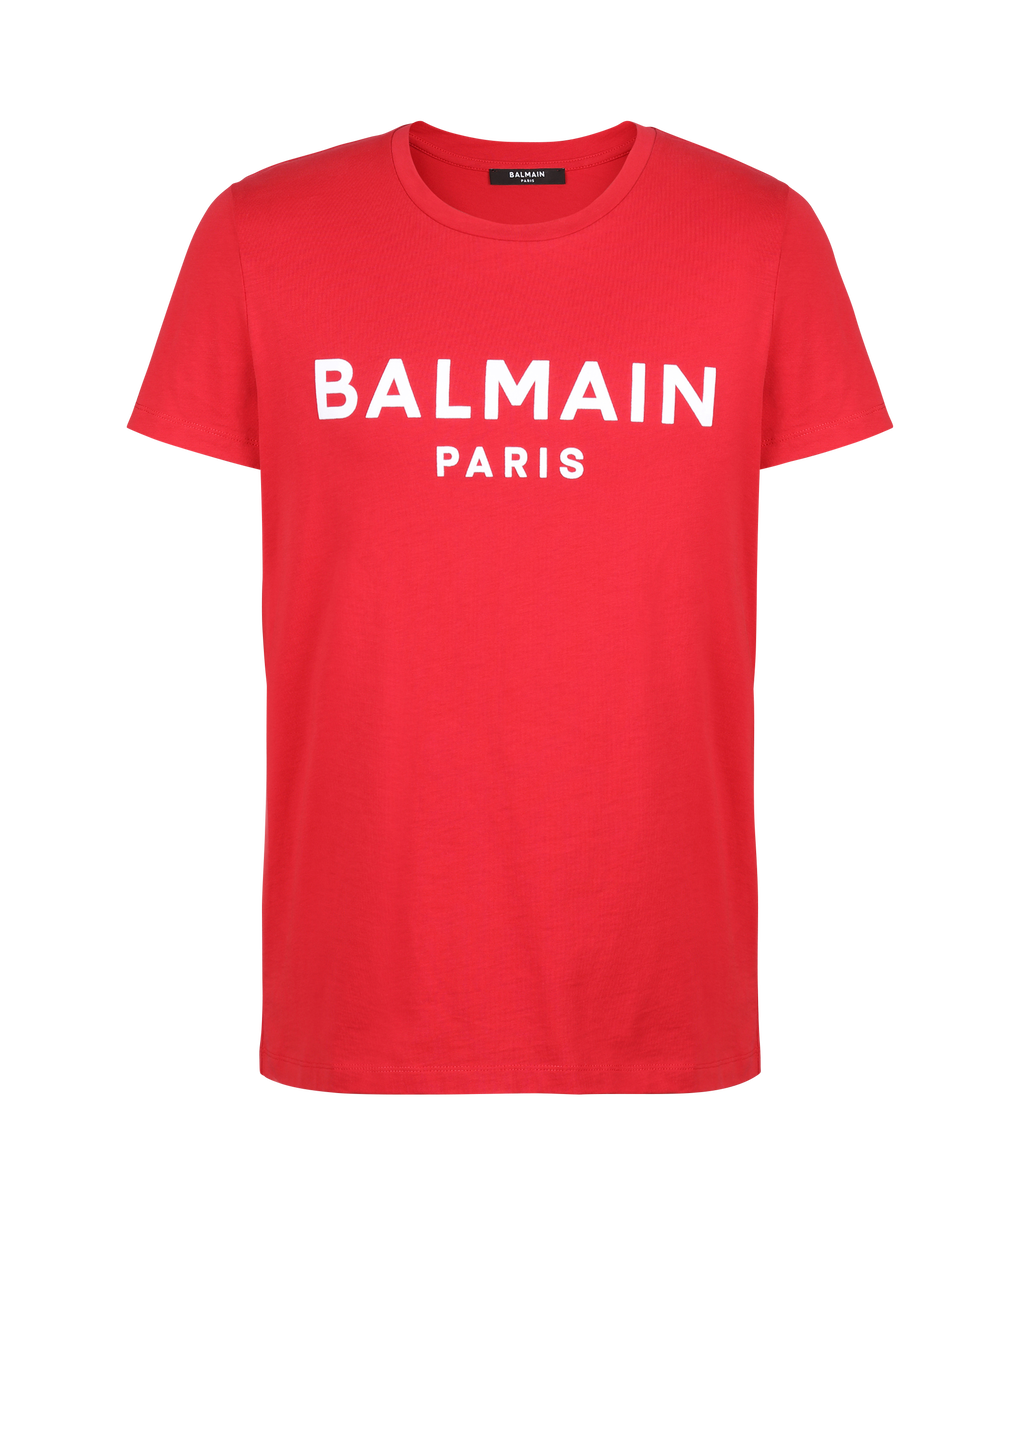 T-shirt en coton floqué logo Balmain Paris, rouge, hi-res